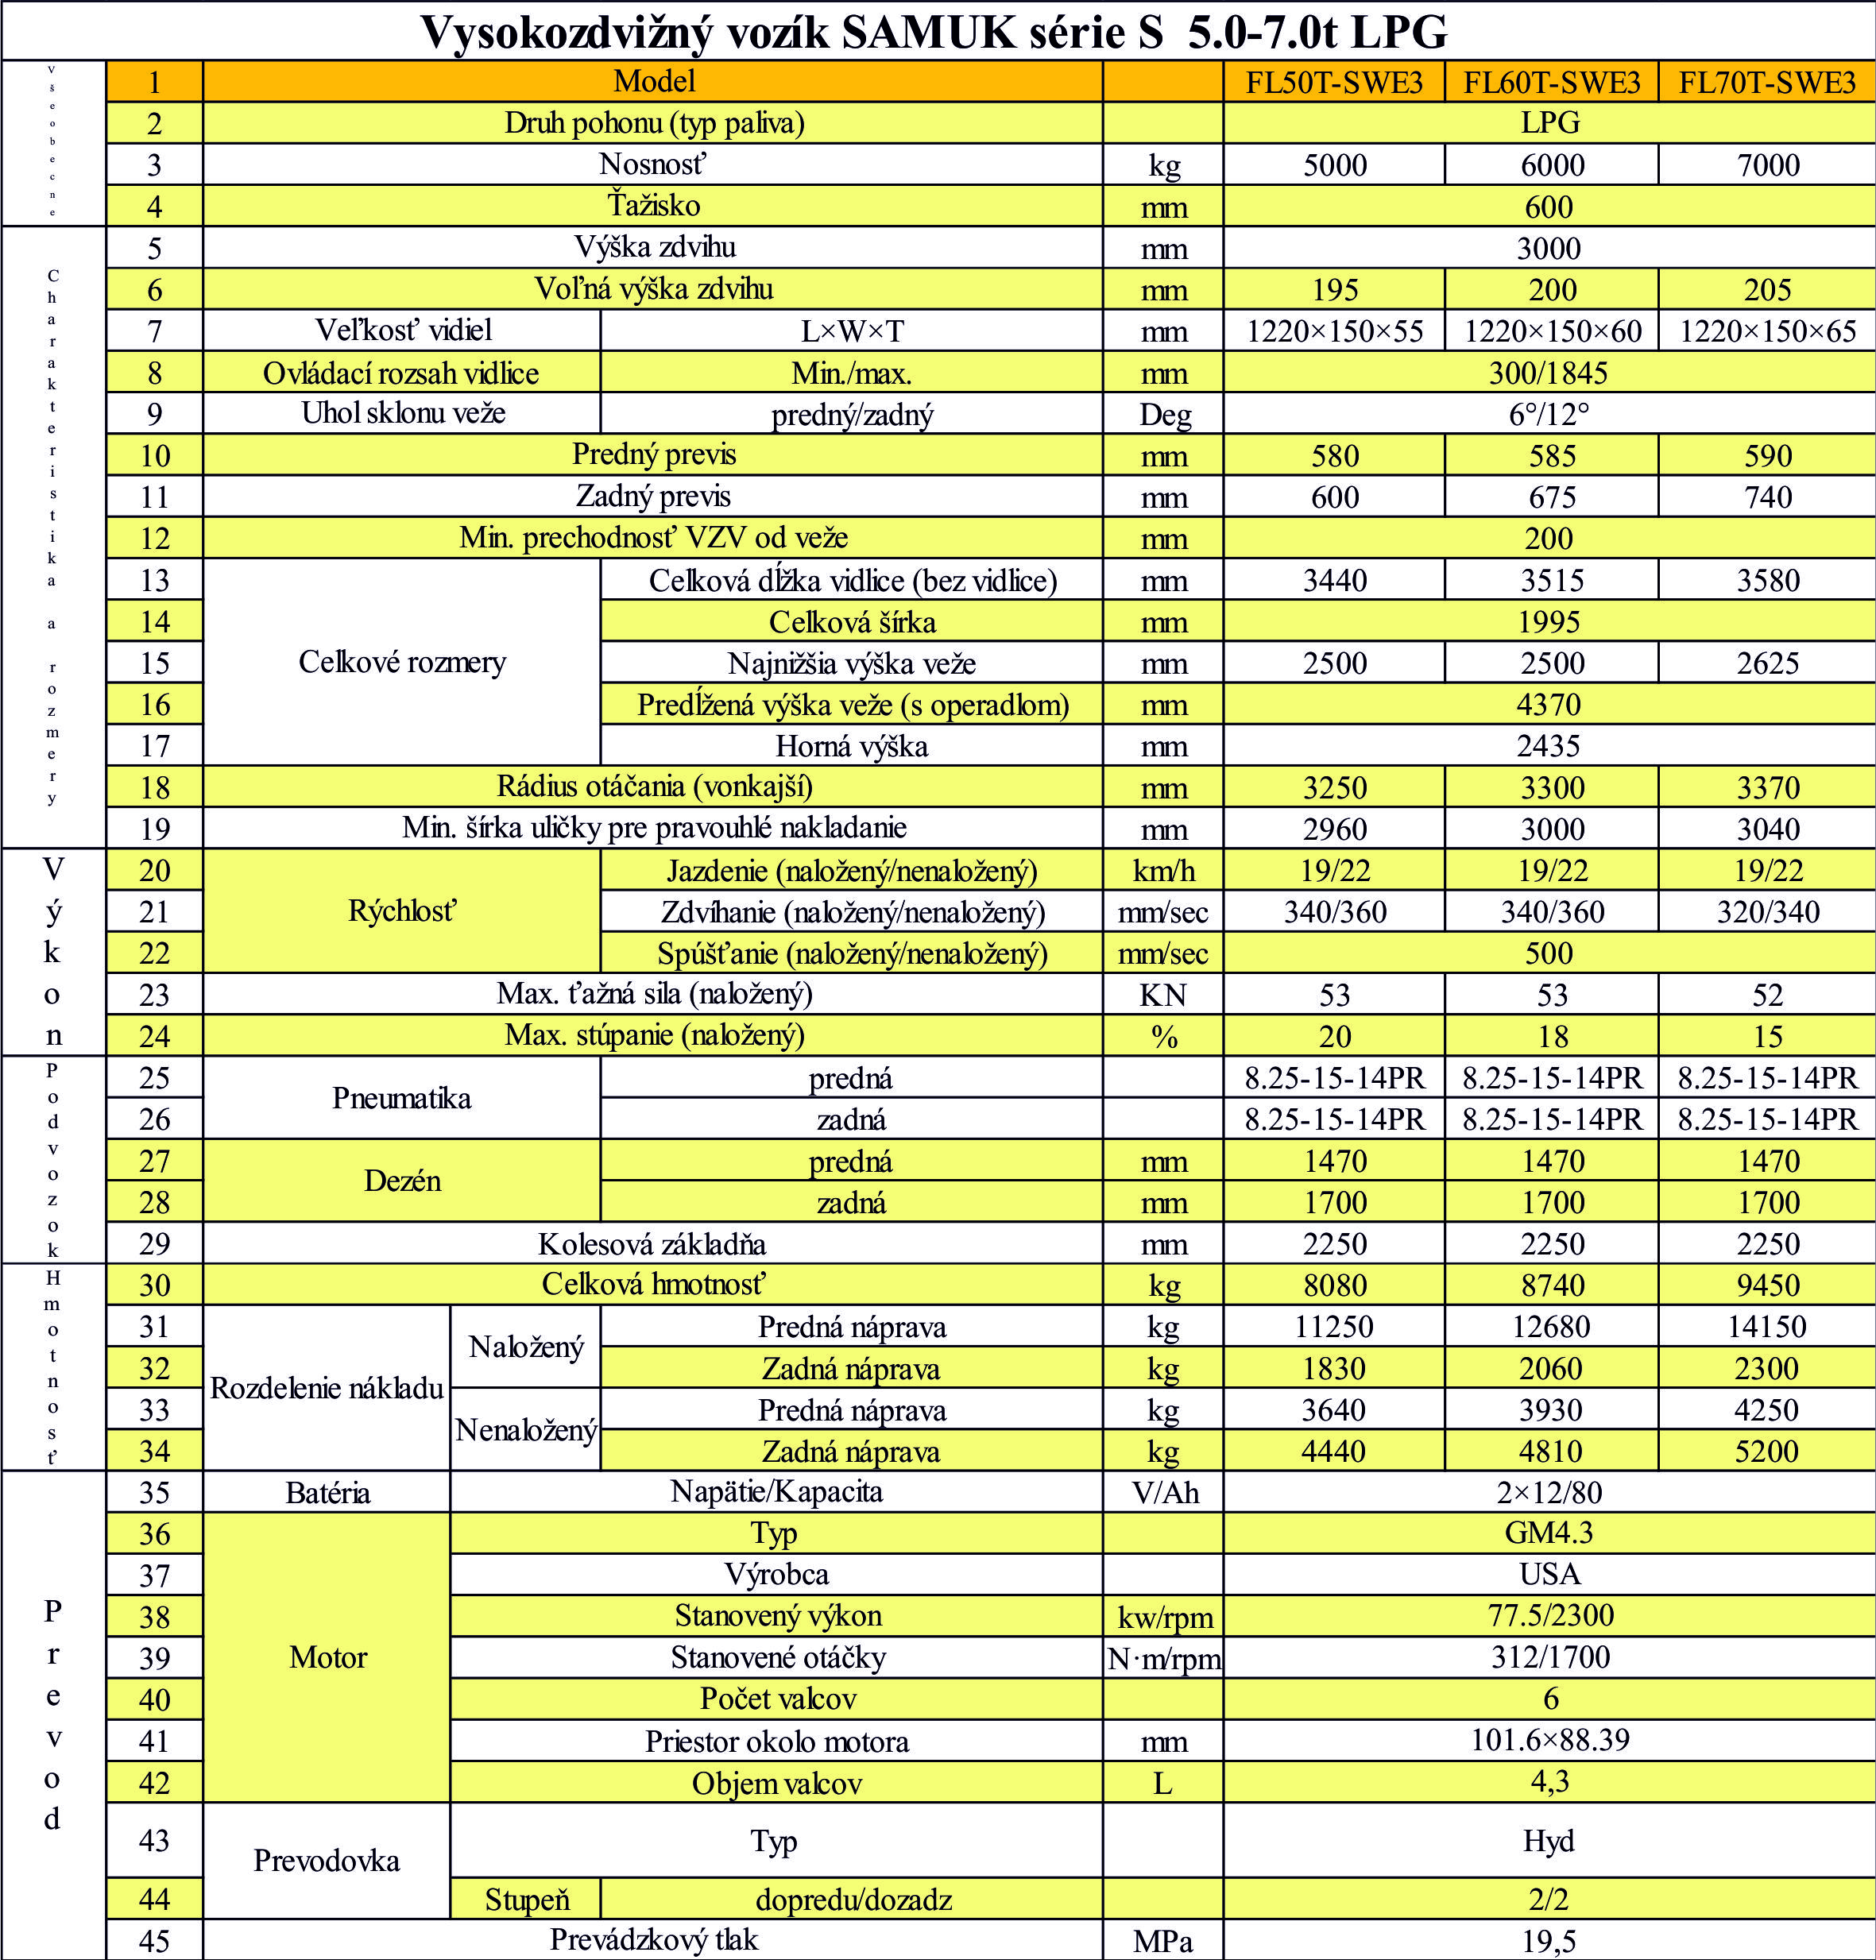 Špecifikácia LPG 5.0 - 7.0 ton